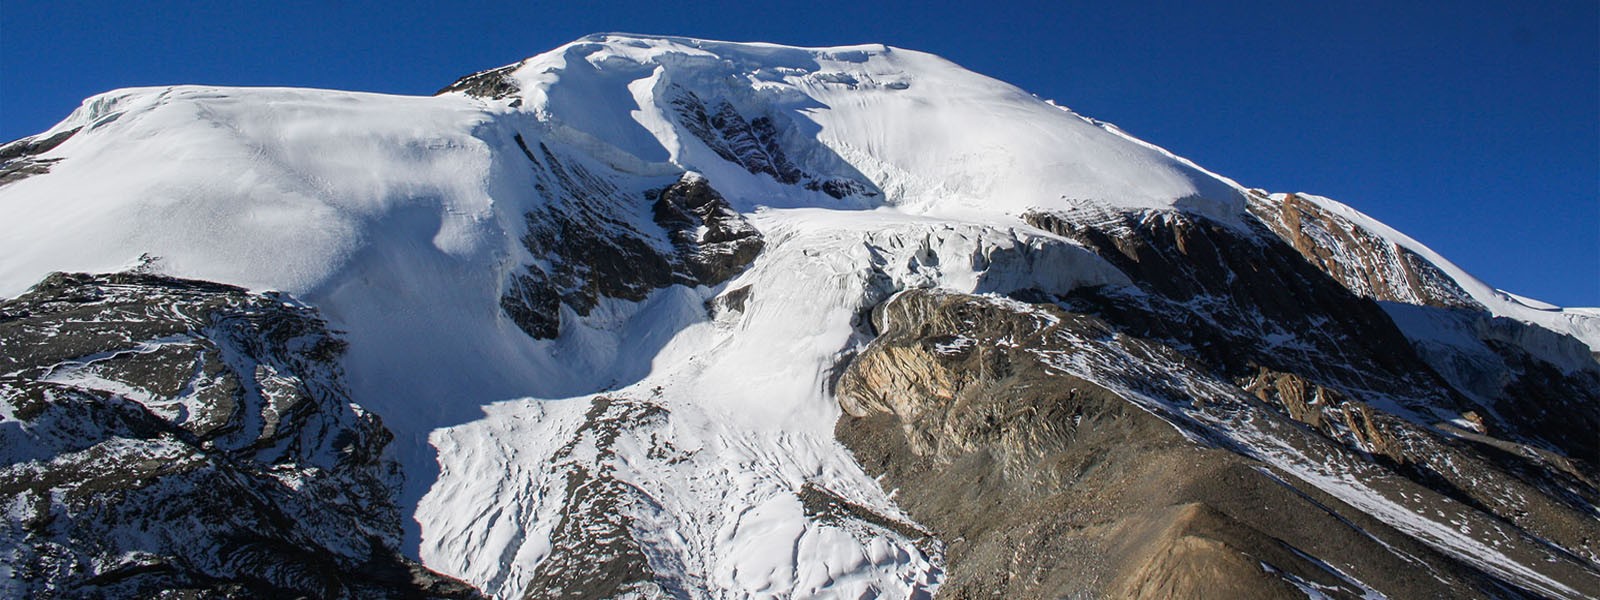 Thorung Peak Climbing in Annapurna Himalayas Range